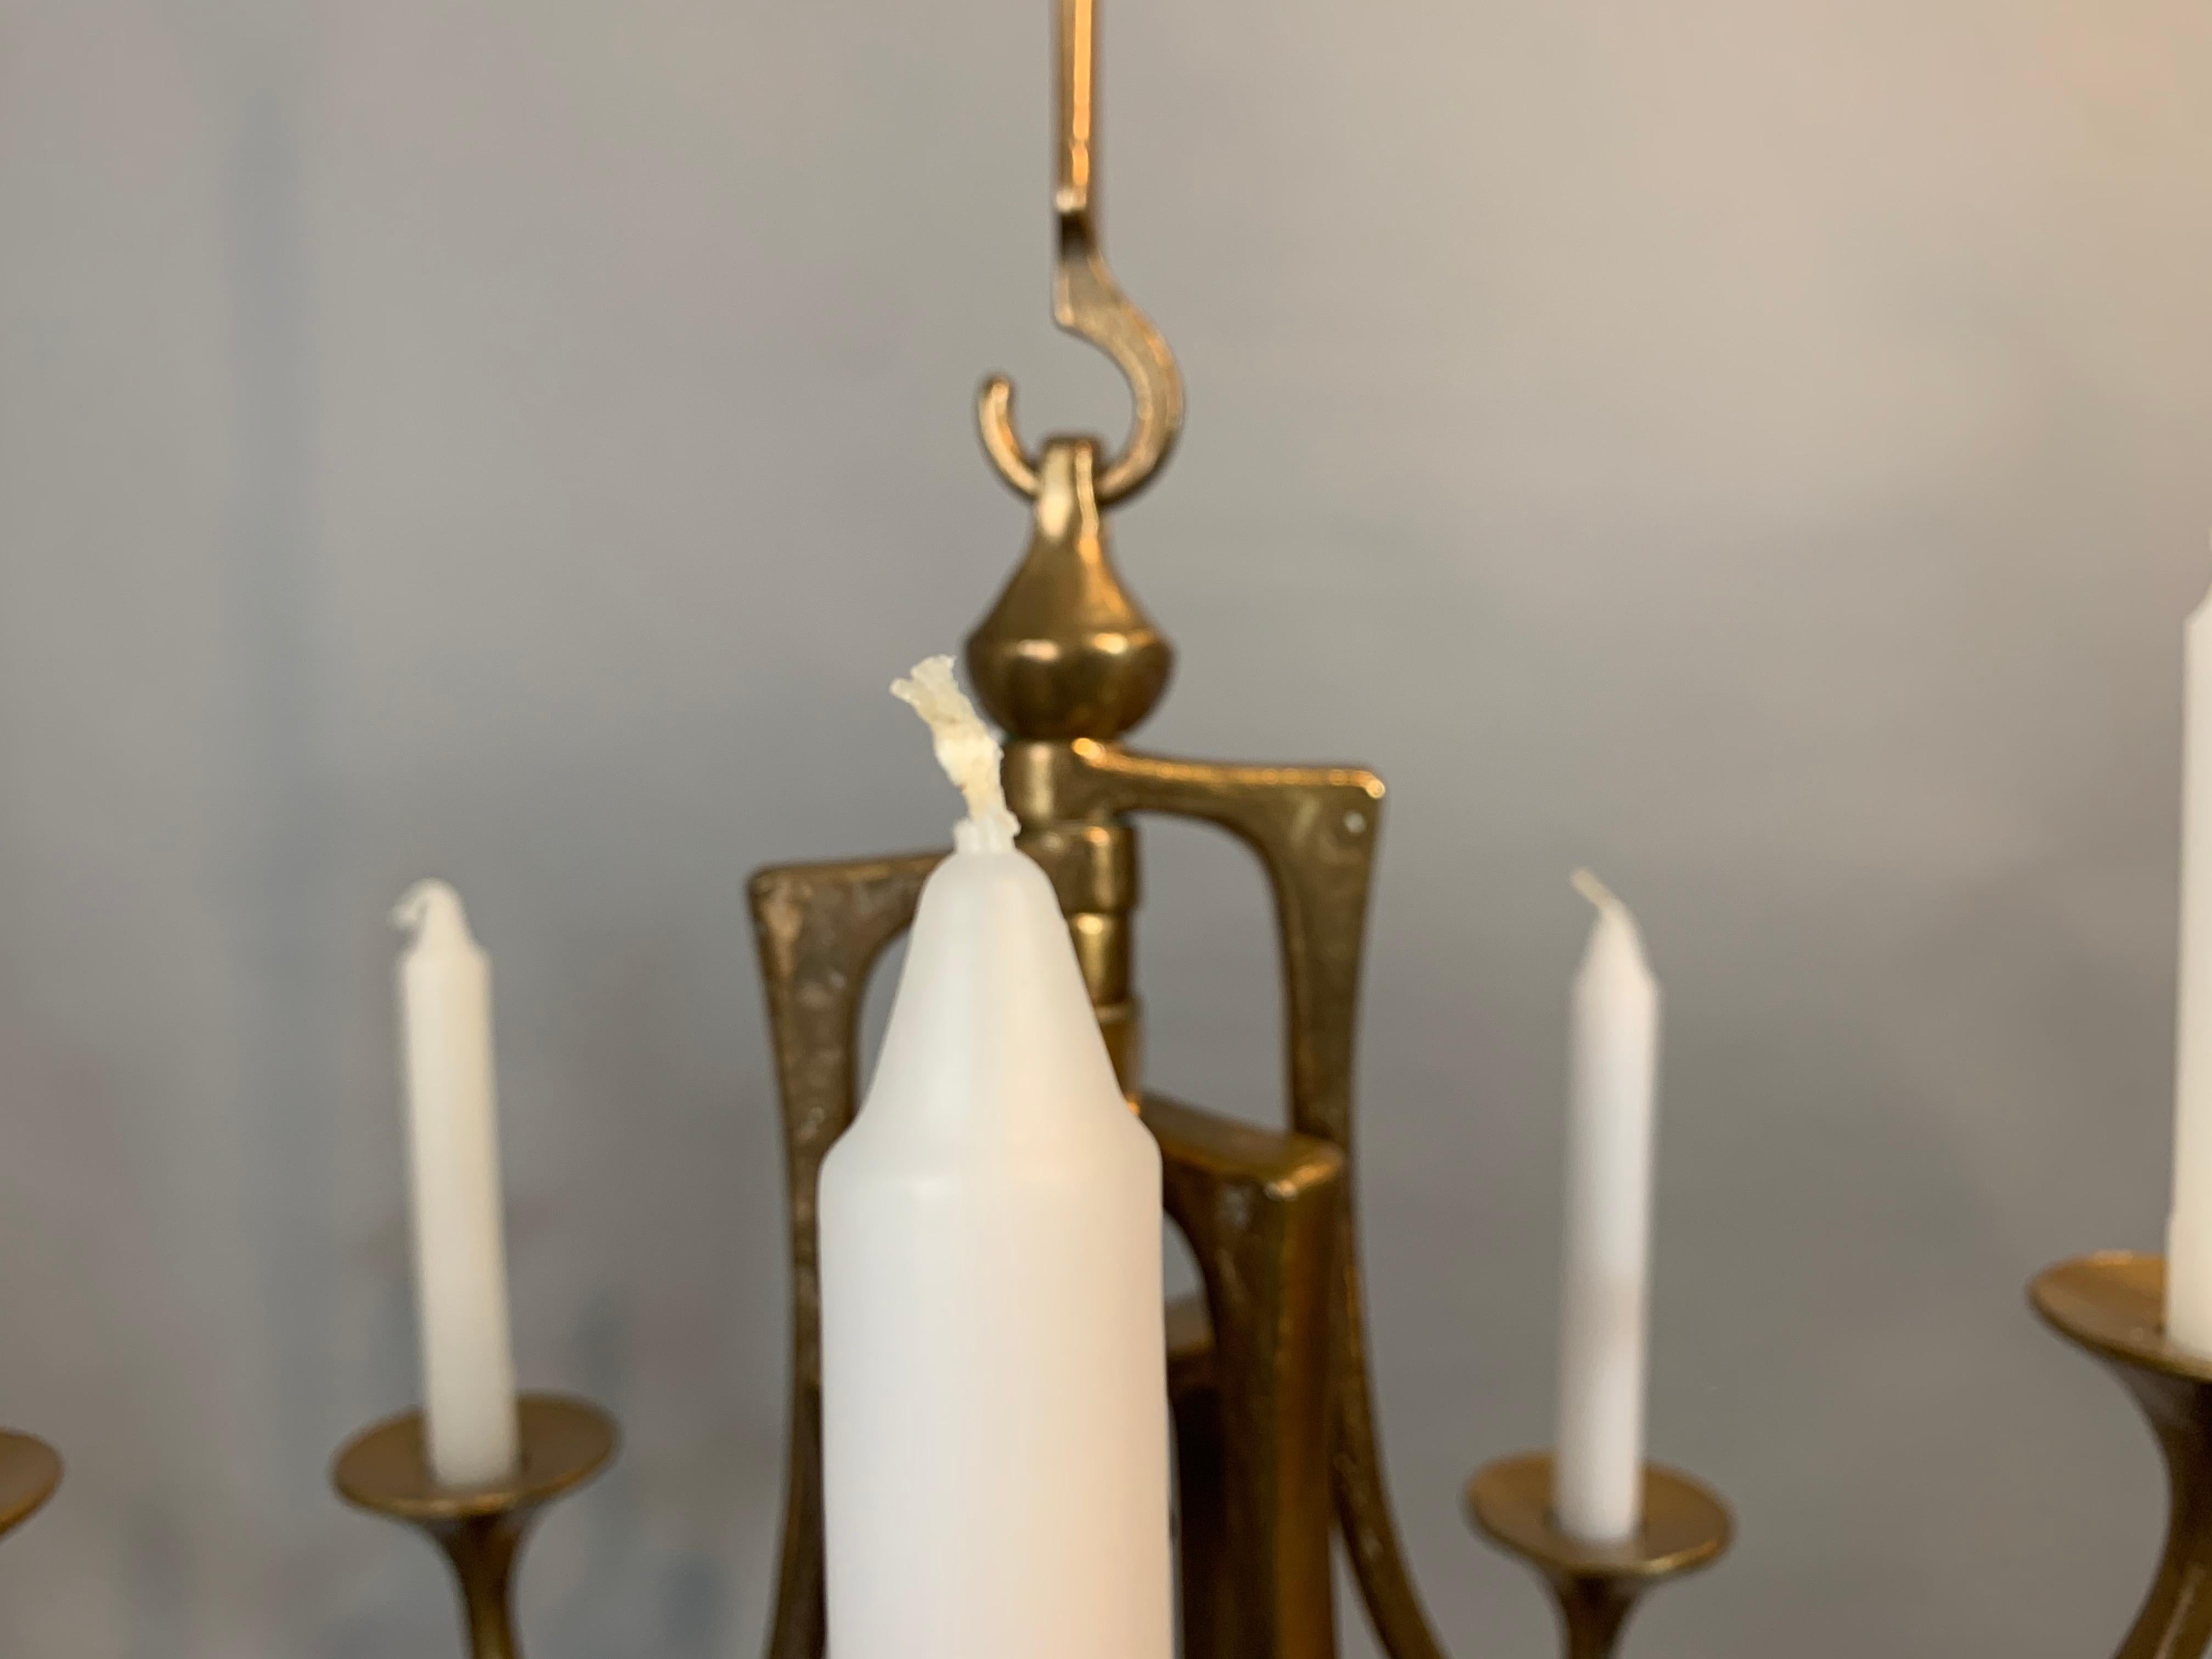 Hängende Harjes Metallkunst-Kerzenhalter aus Bronze, 1960er Jahre (Handgefertigt)